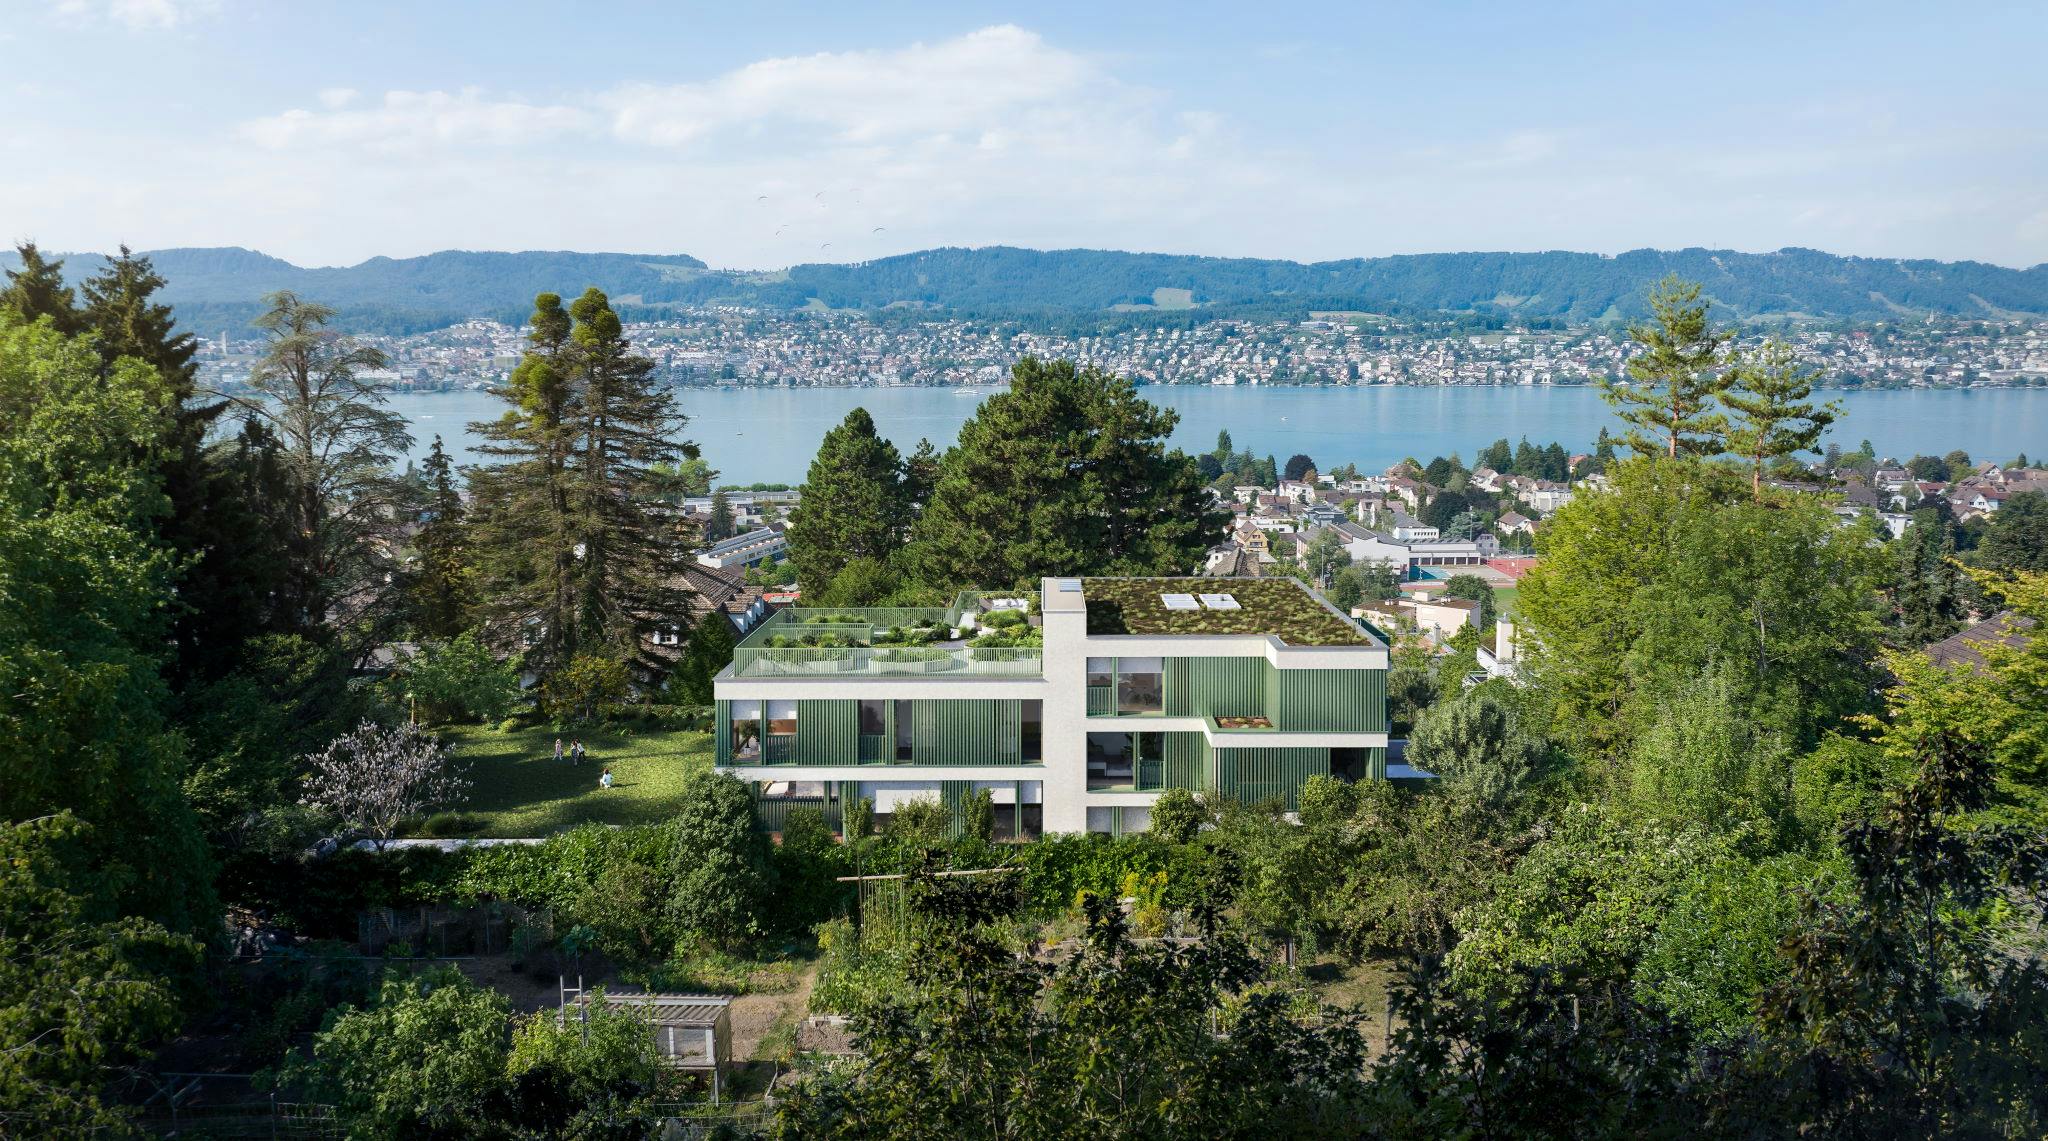 Mehrgenerationenhaus am Zürichsee